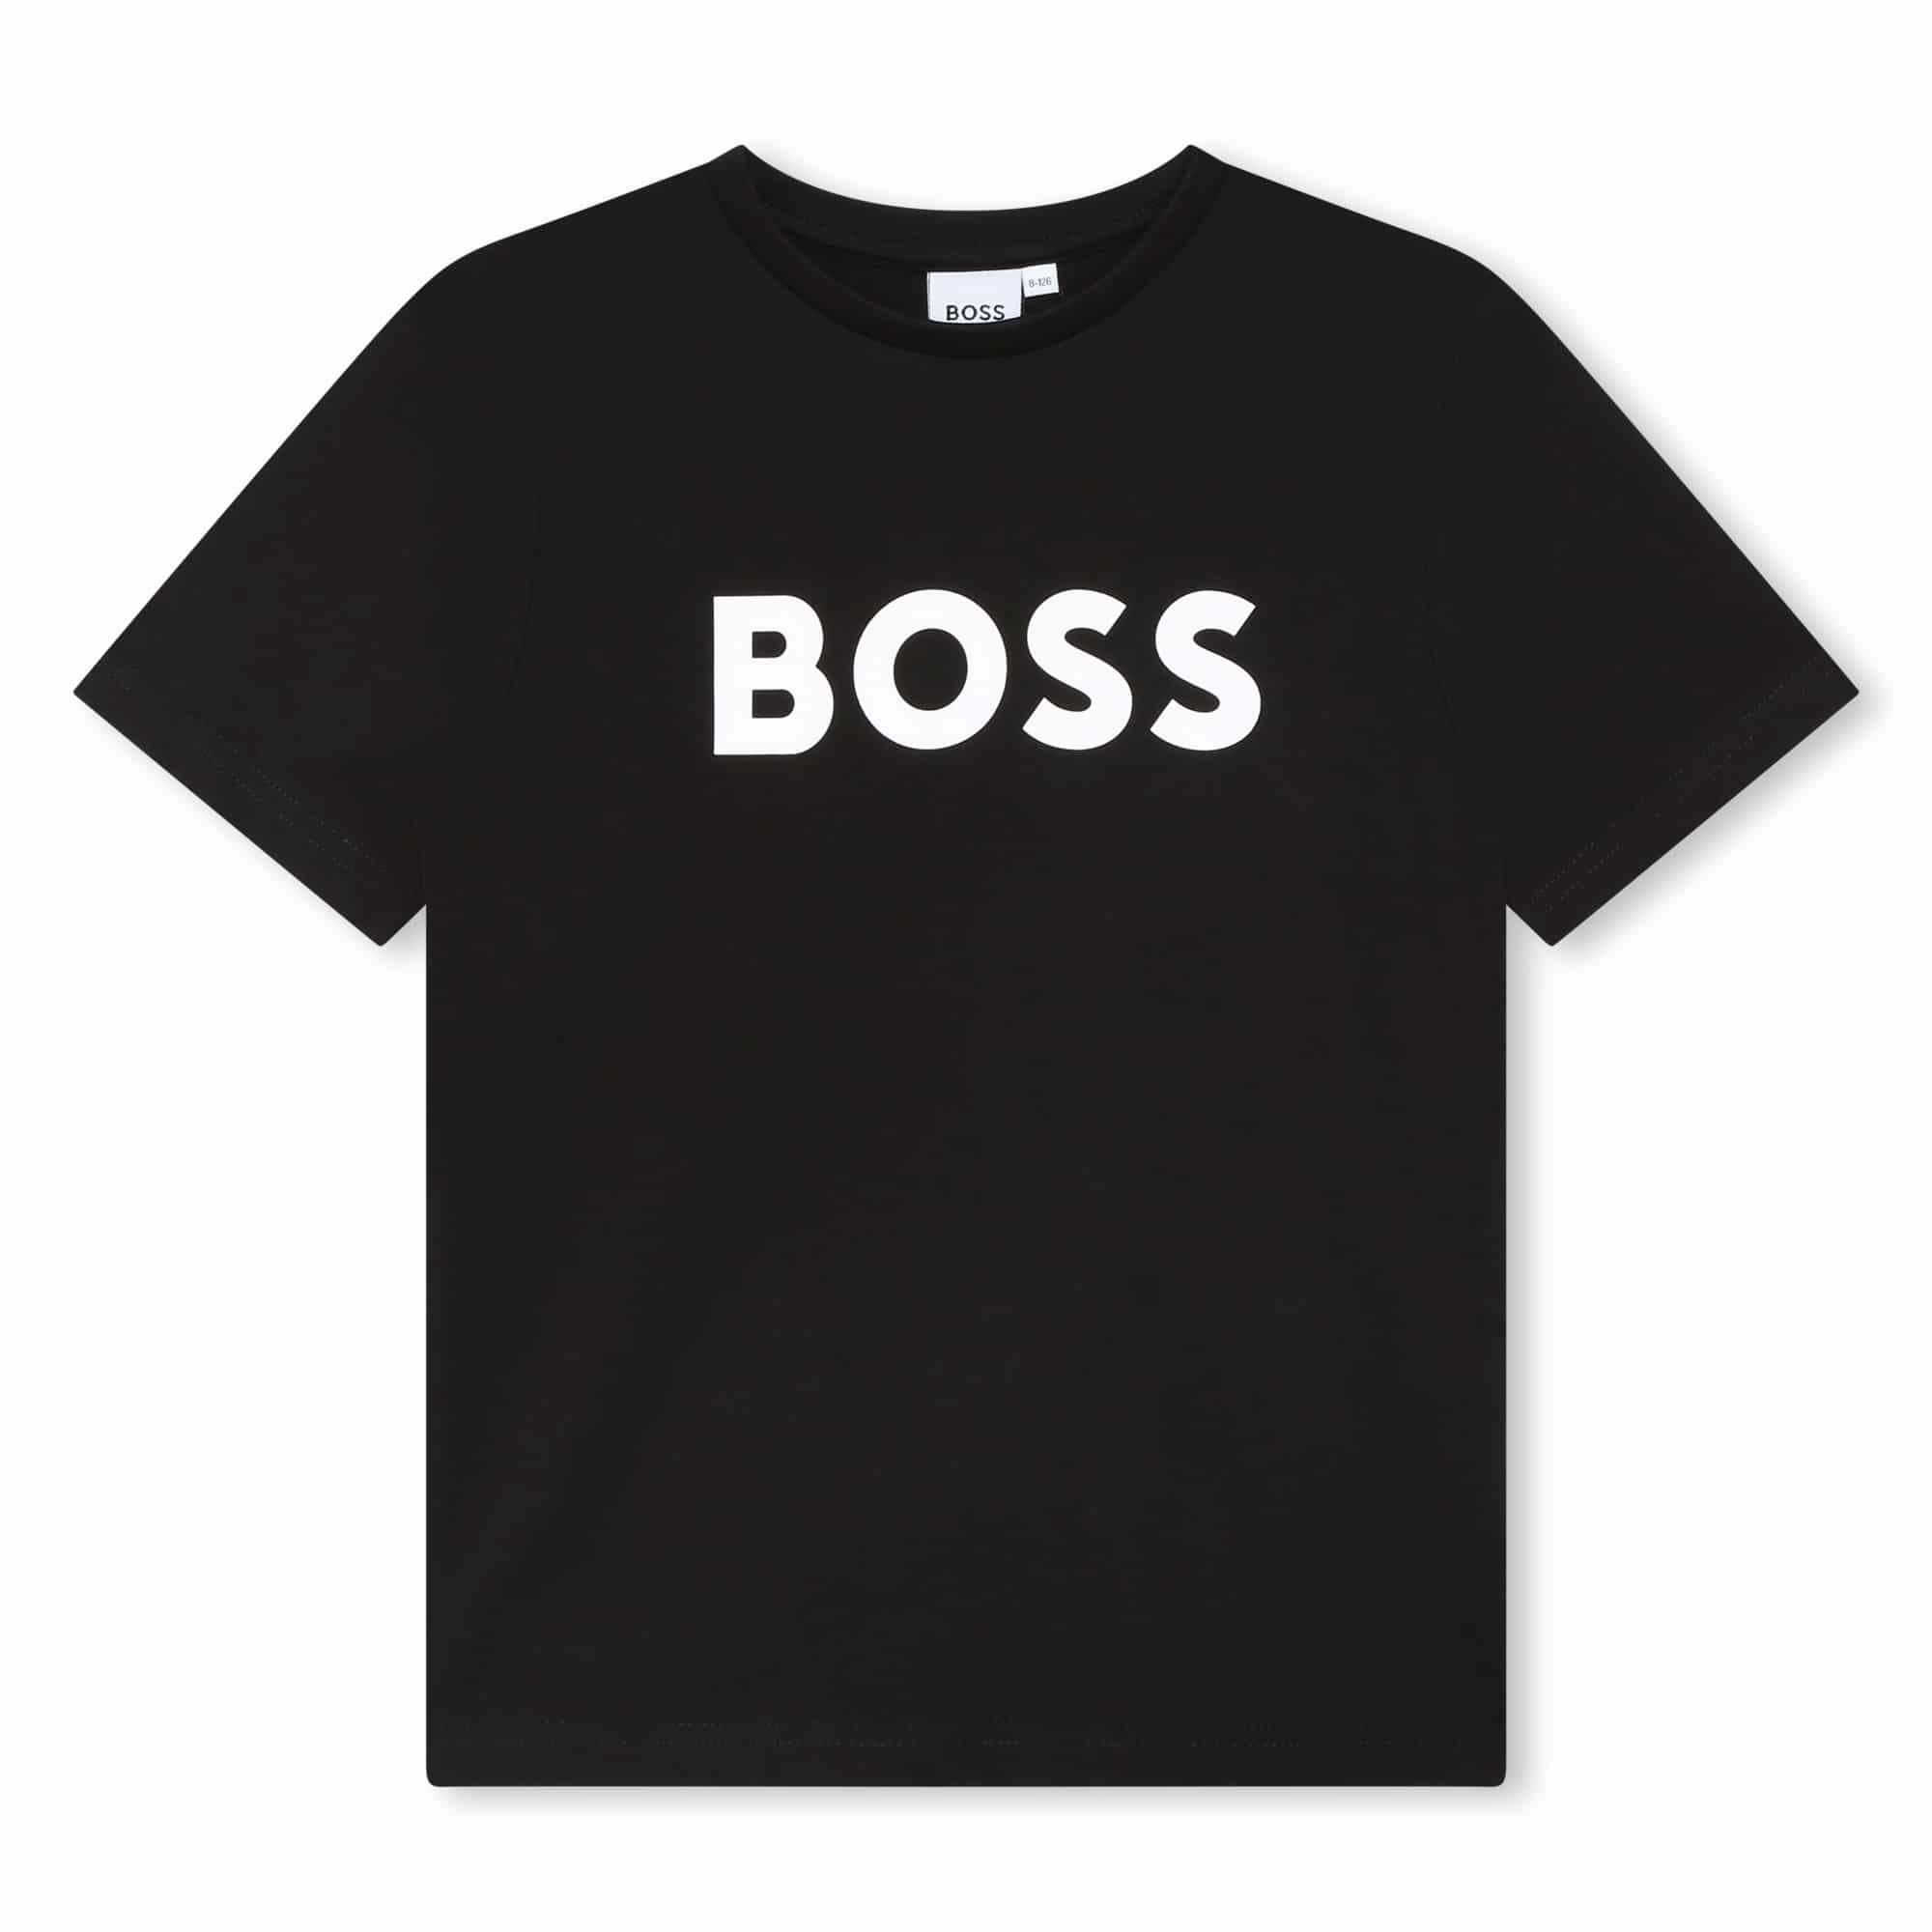 BOSS boys black tshirt with white logo